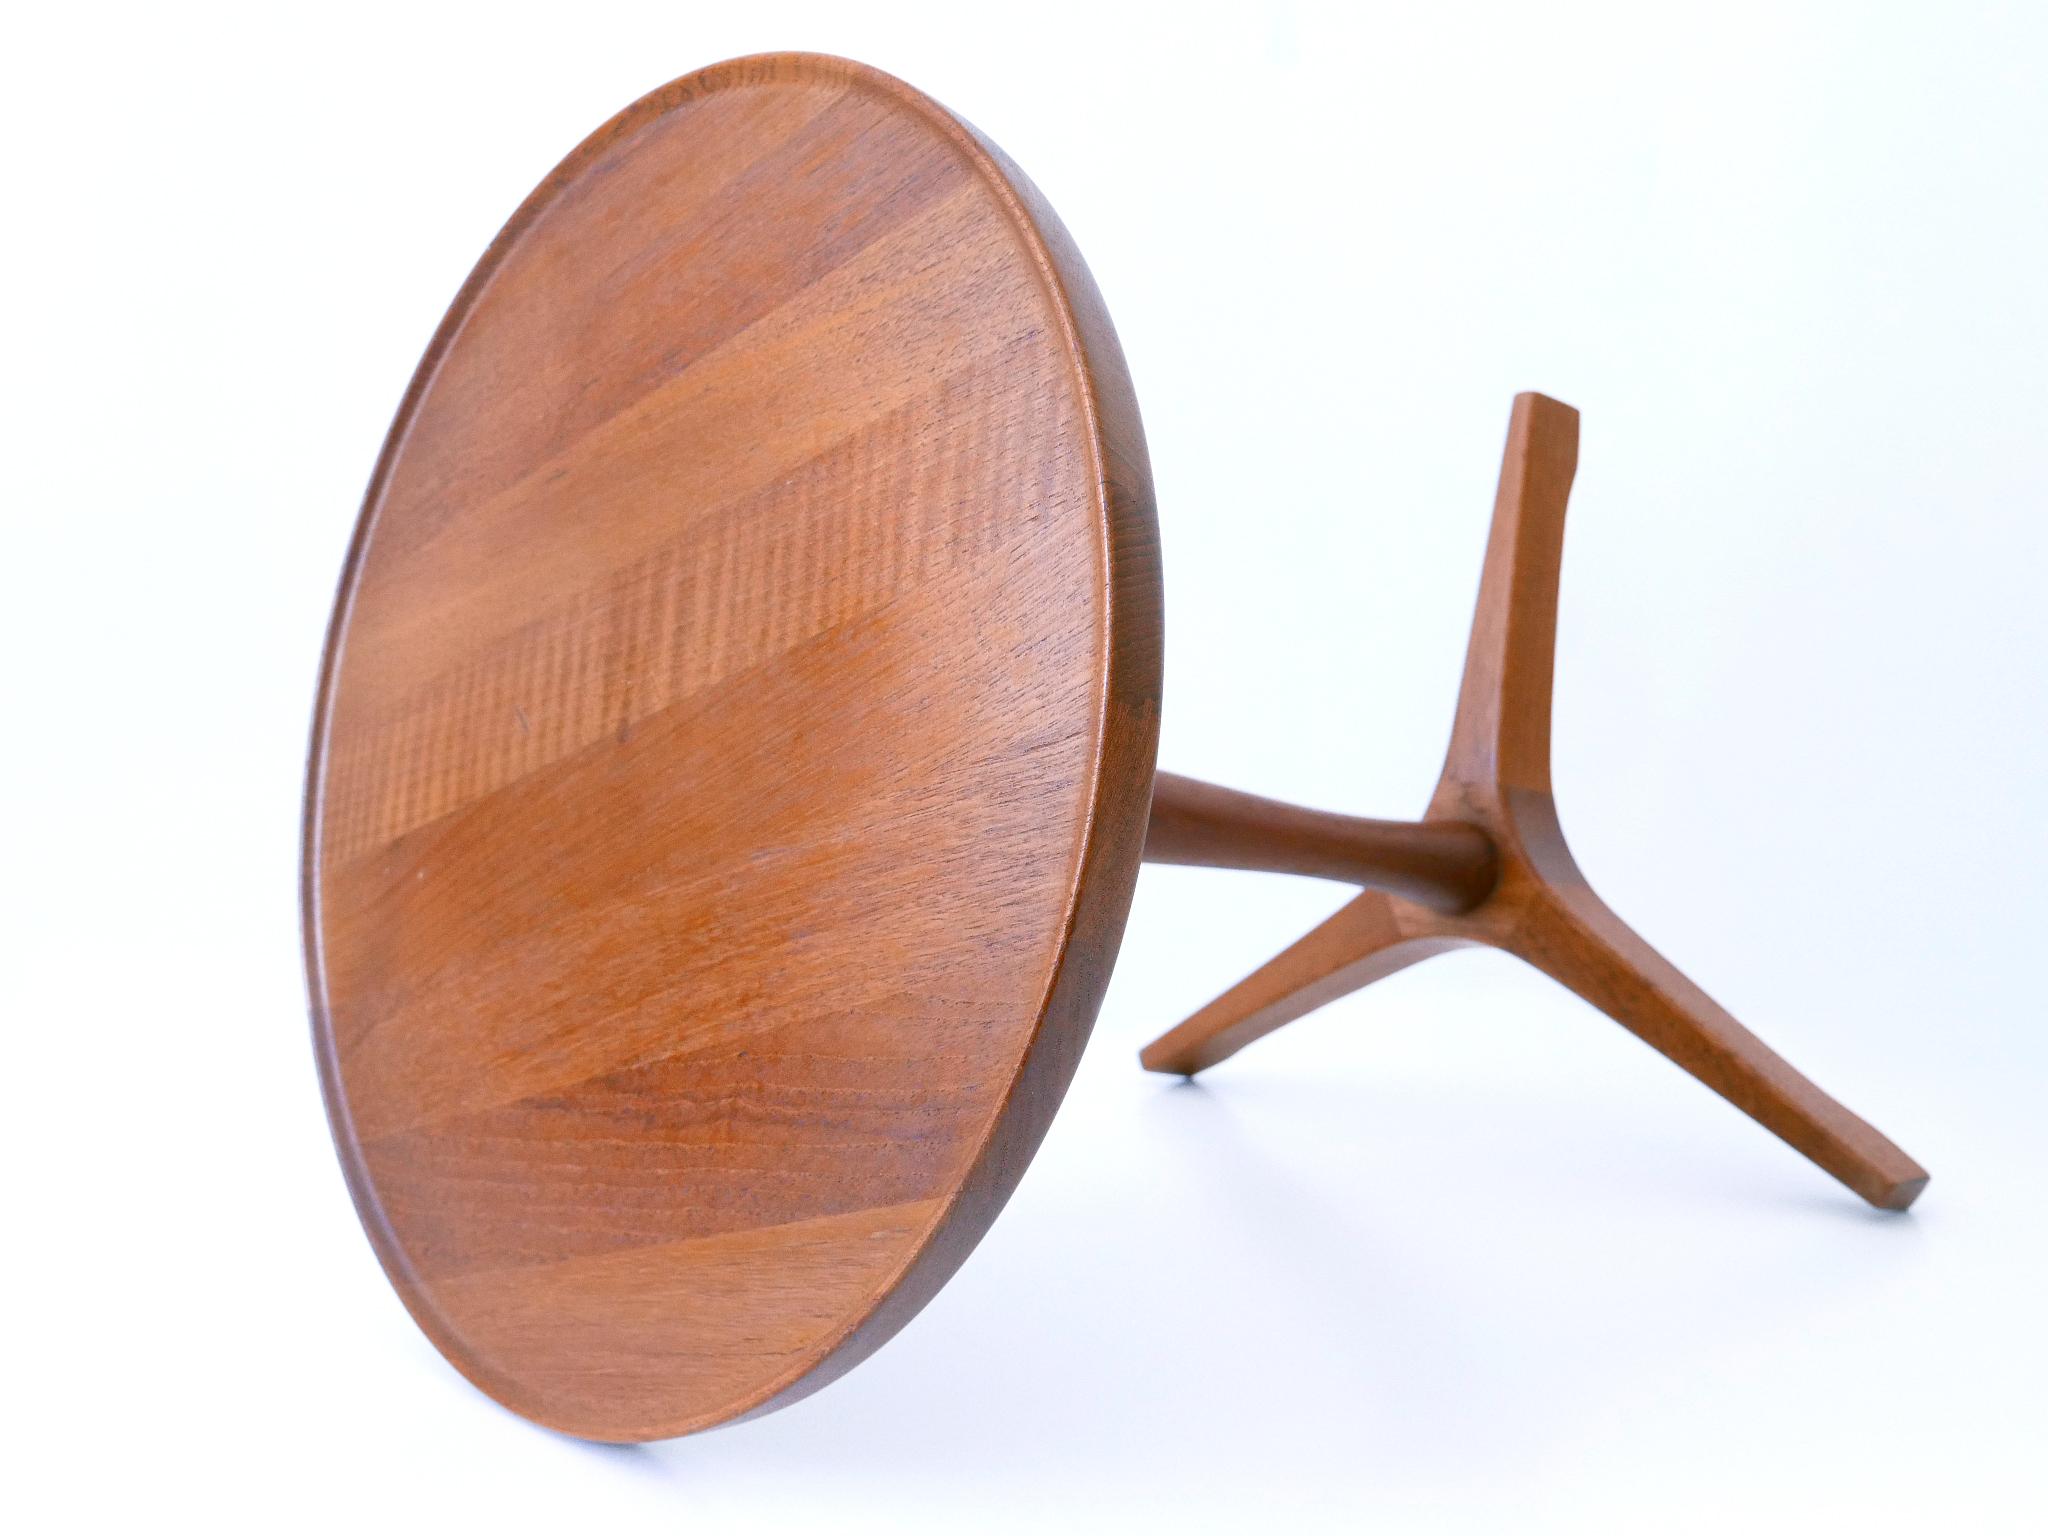 Elegant Mid-Century Modern Teak Side Table by Hans C. Andersen for Artek 1960s For Sale 5